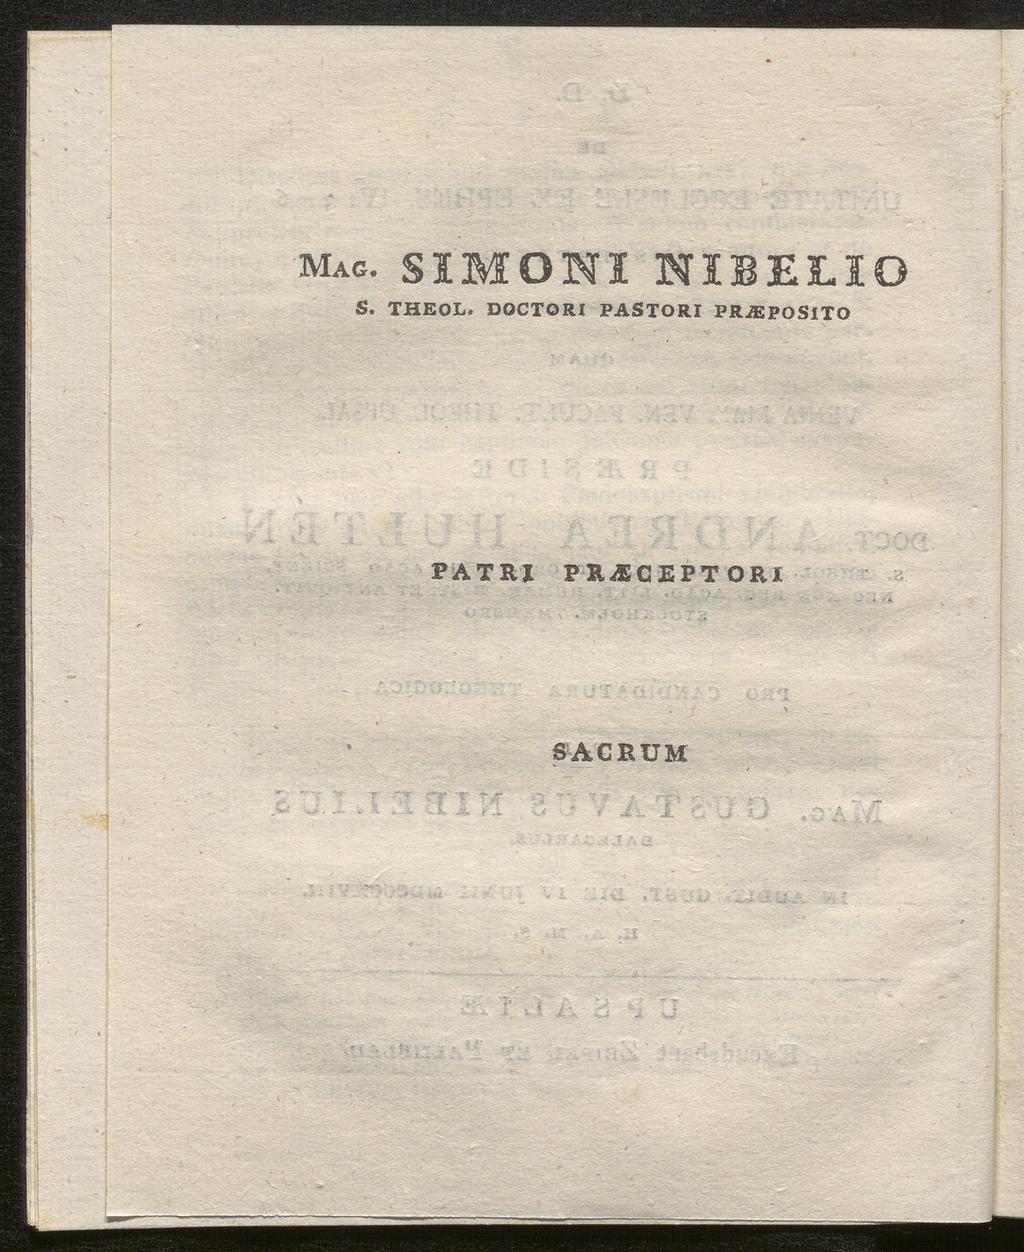 mag. SIMONS NI3BELIO S. THEOL.